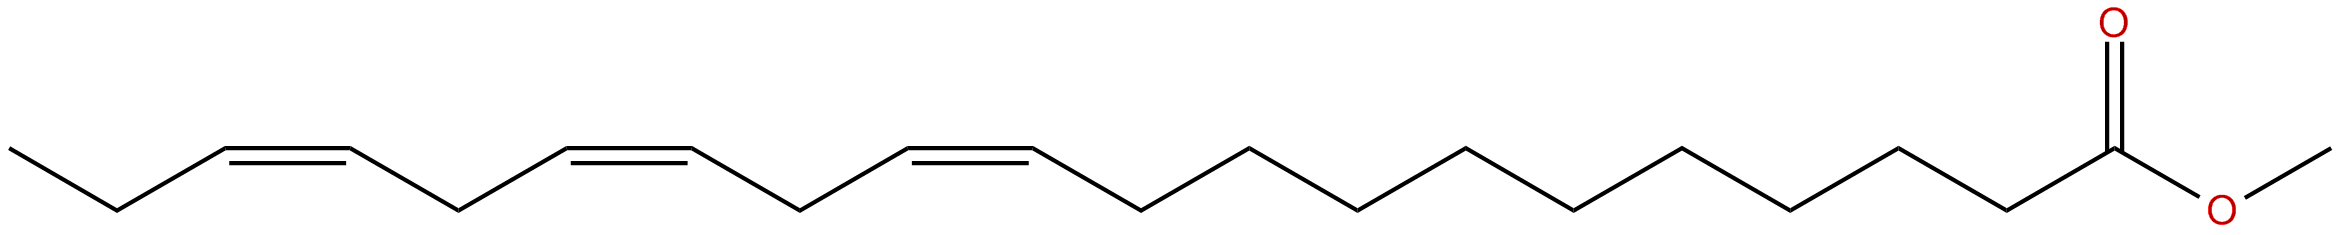 Image of methyl Z,Z,Z 11,14,17-eicosatrieneoate